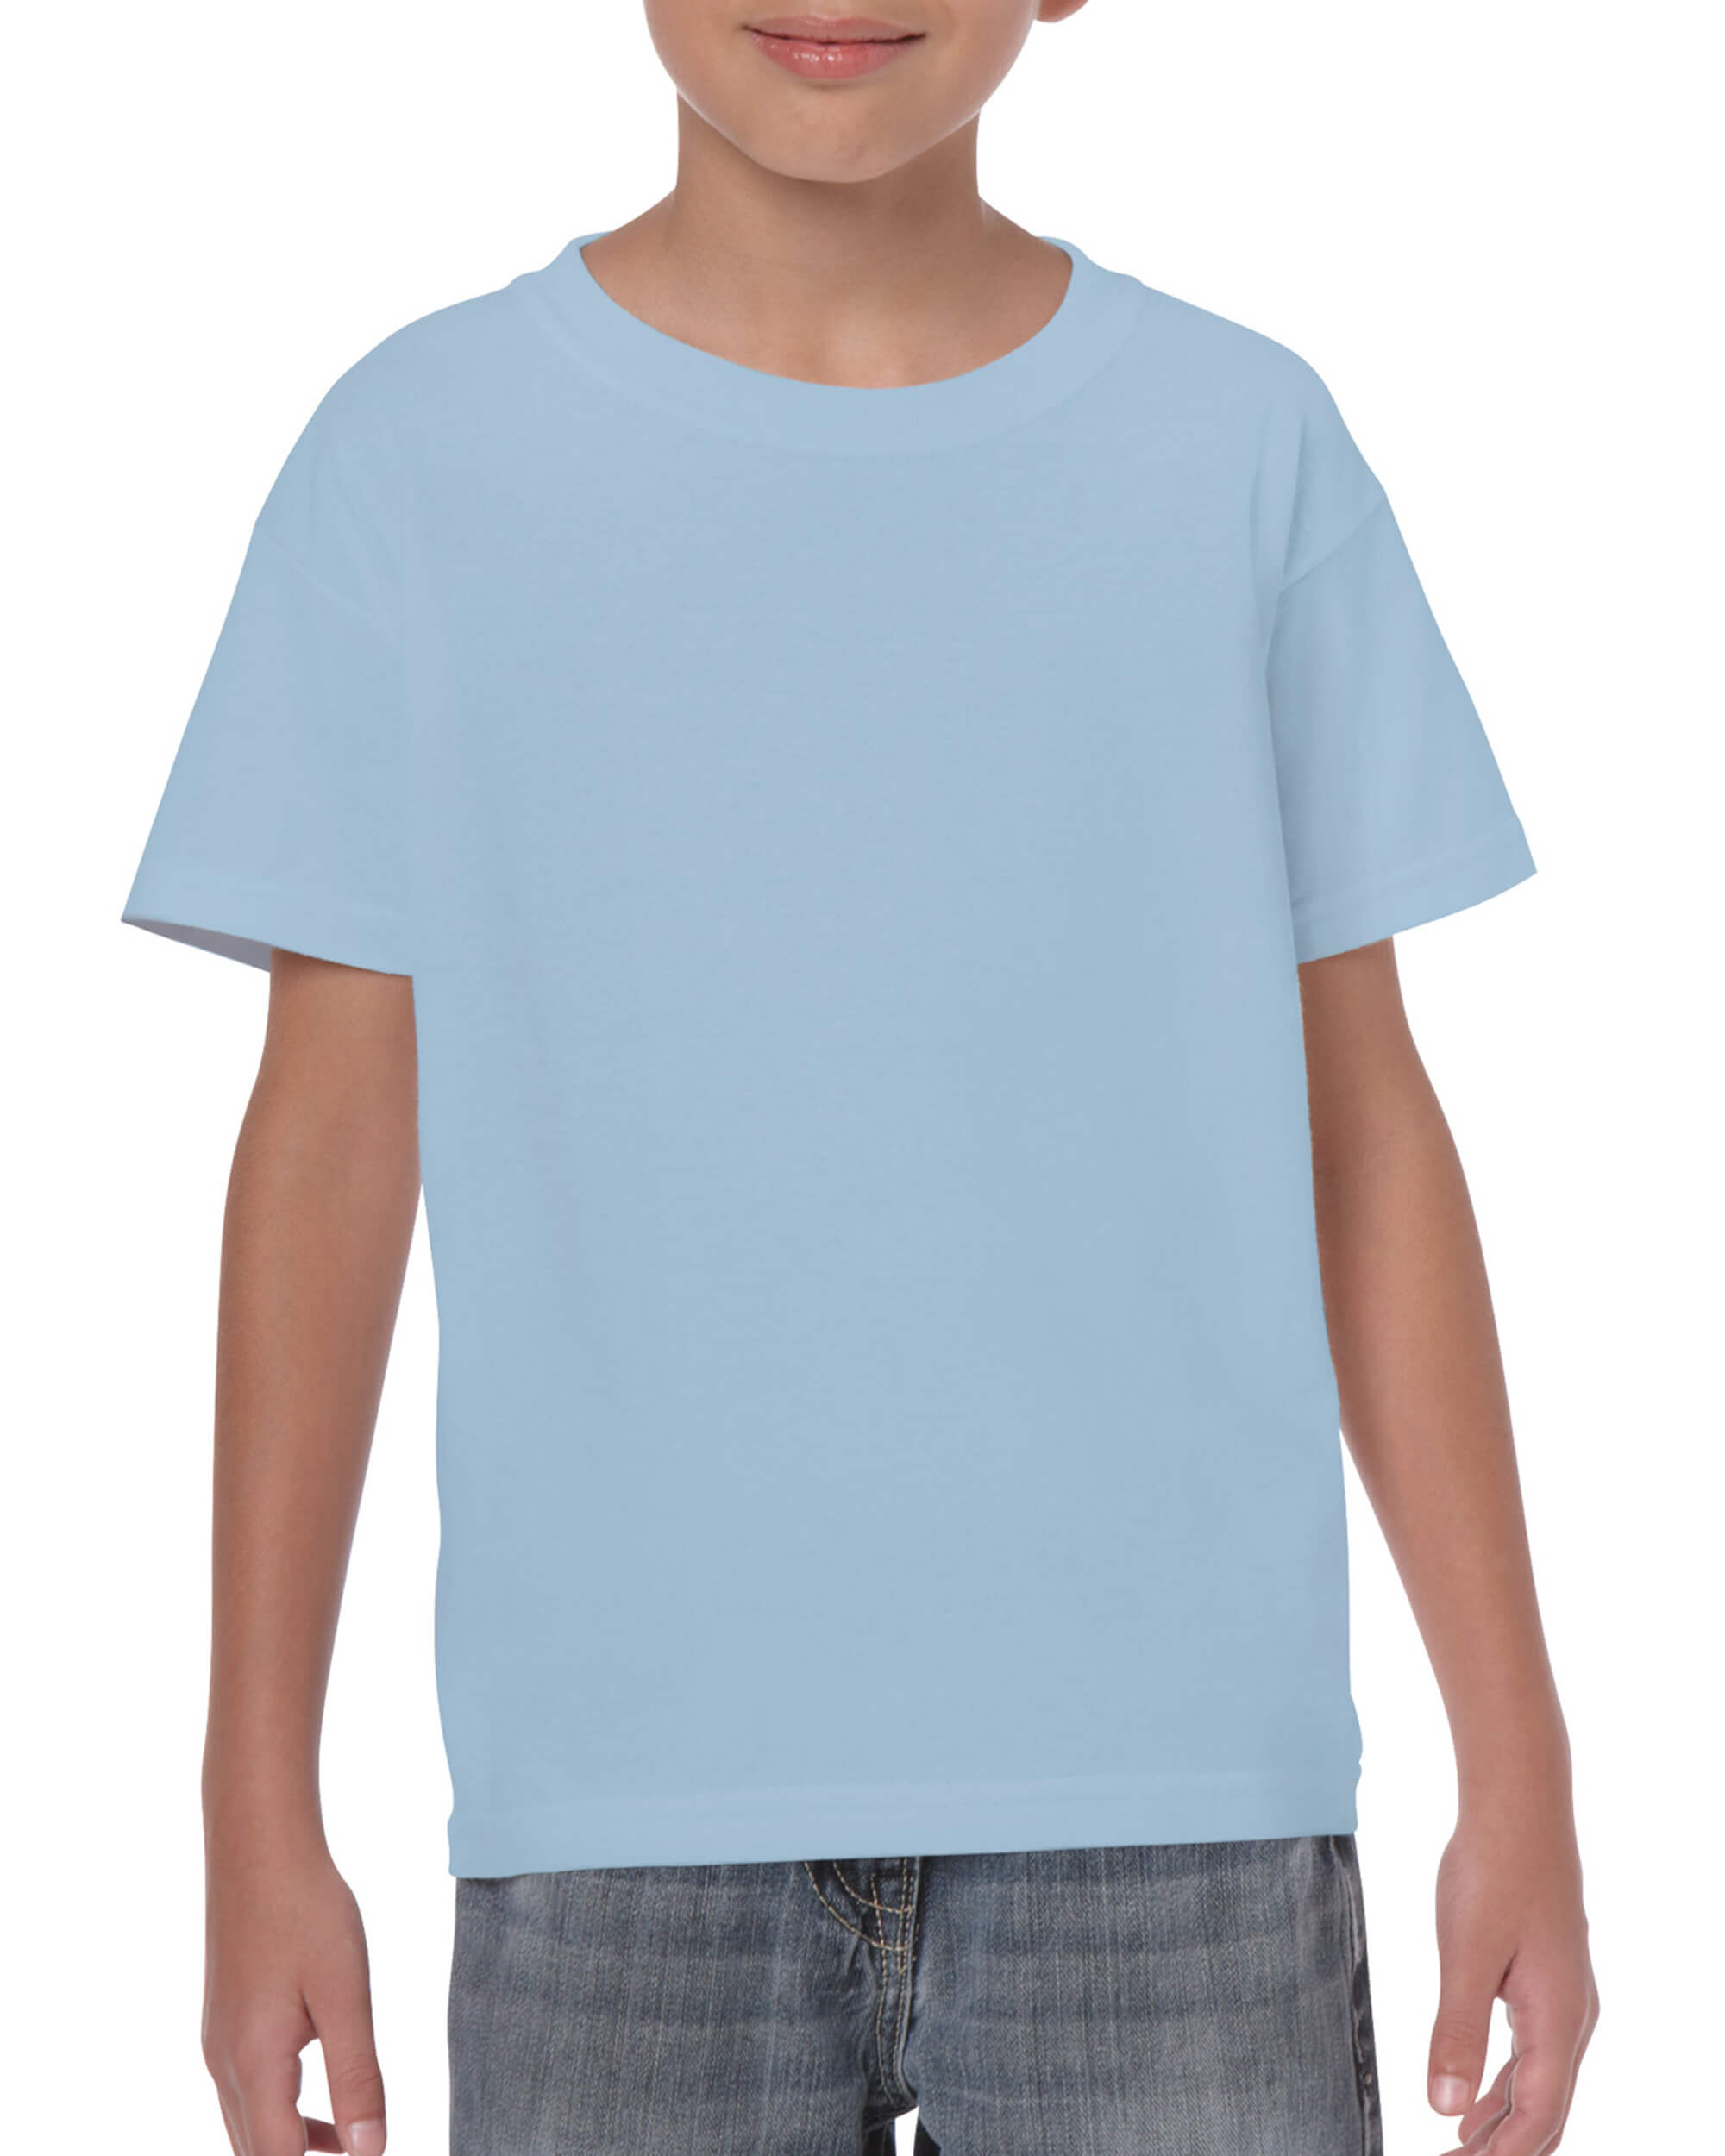 Kids Tshirt - Light Blue